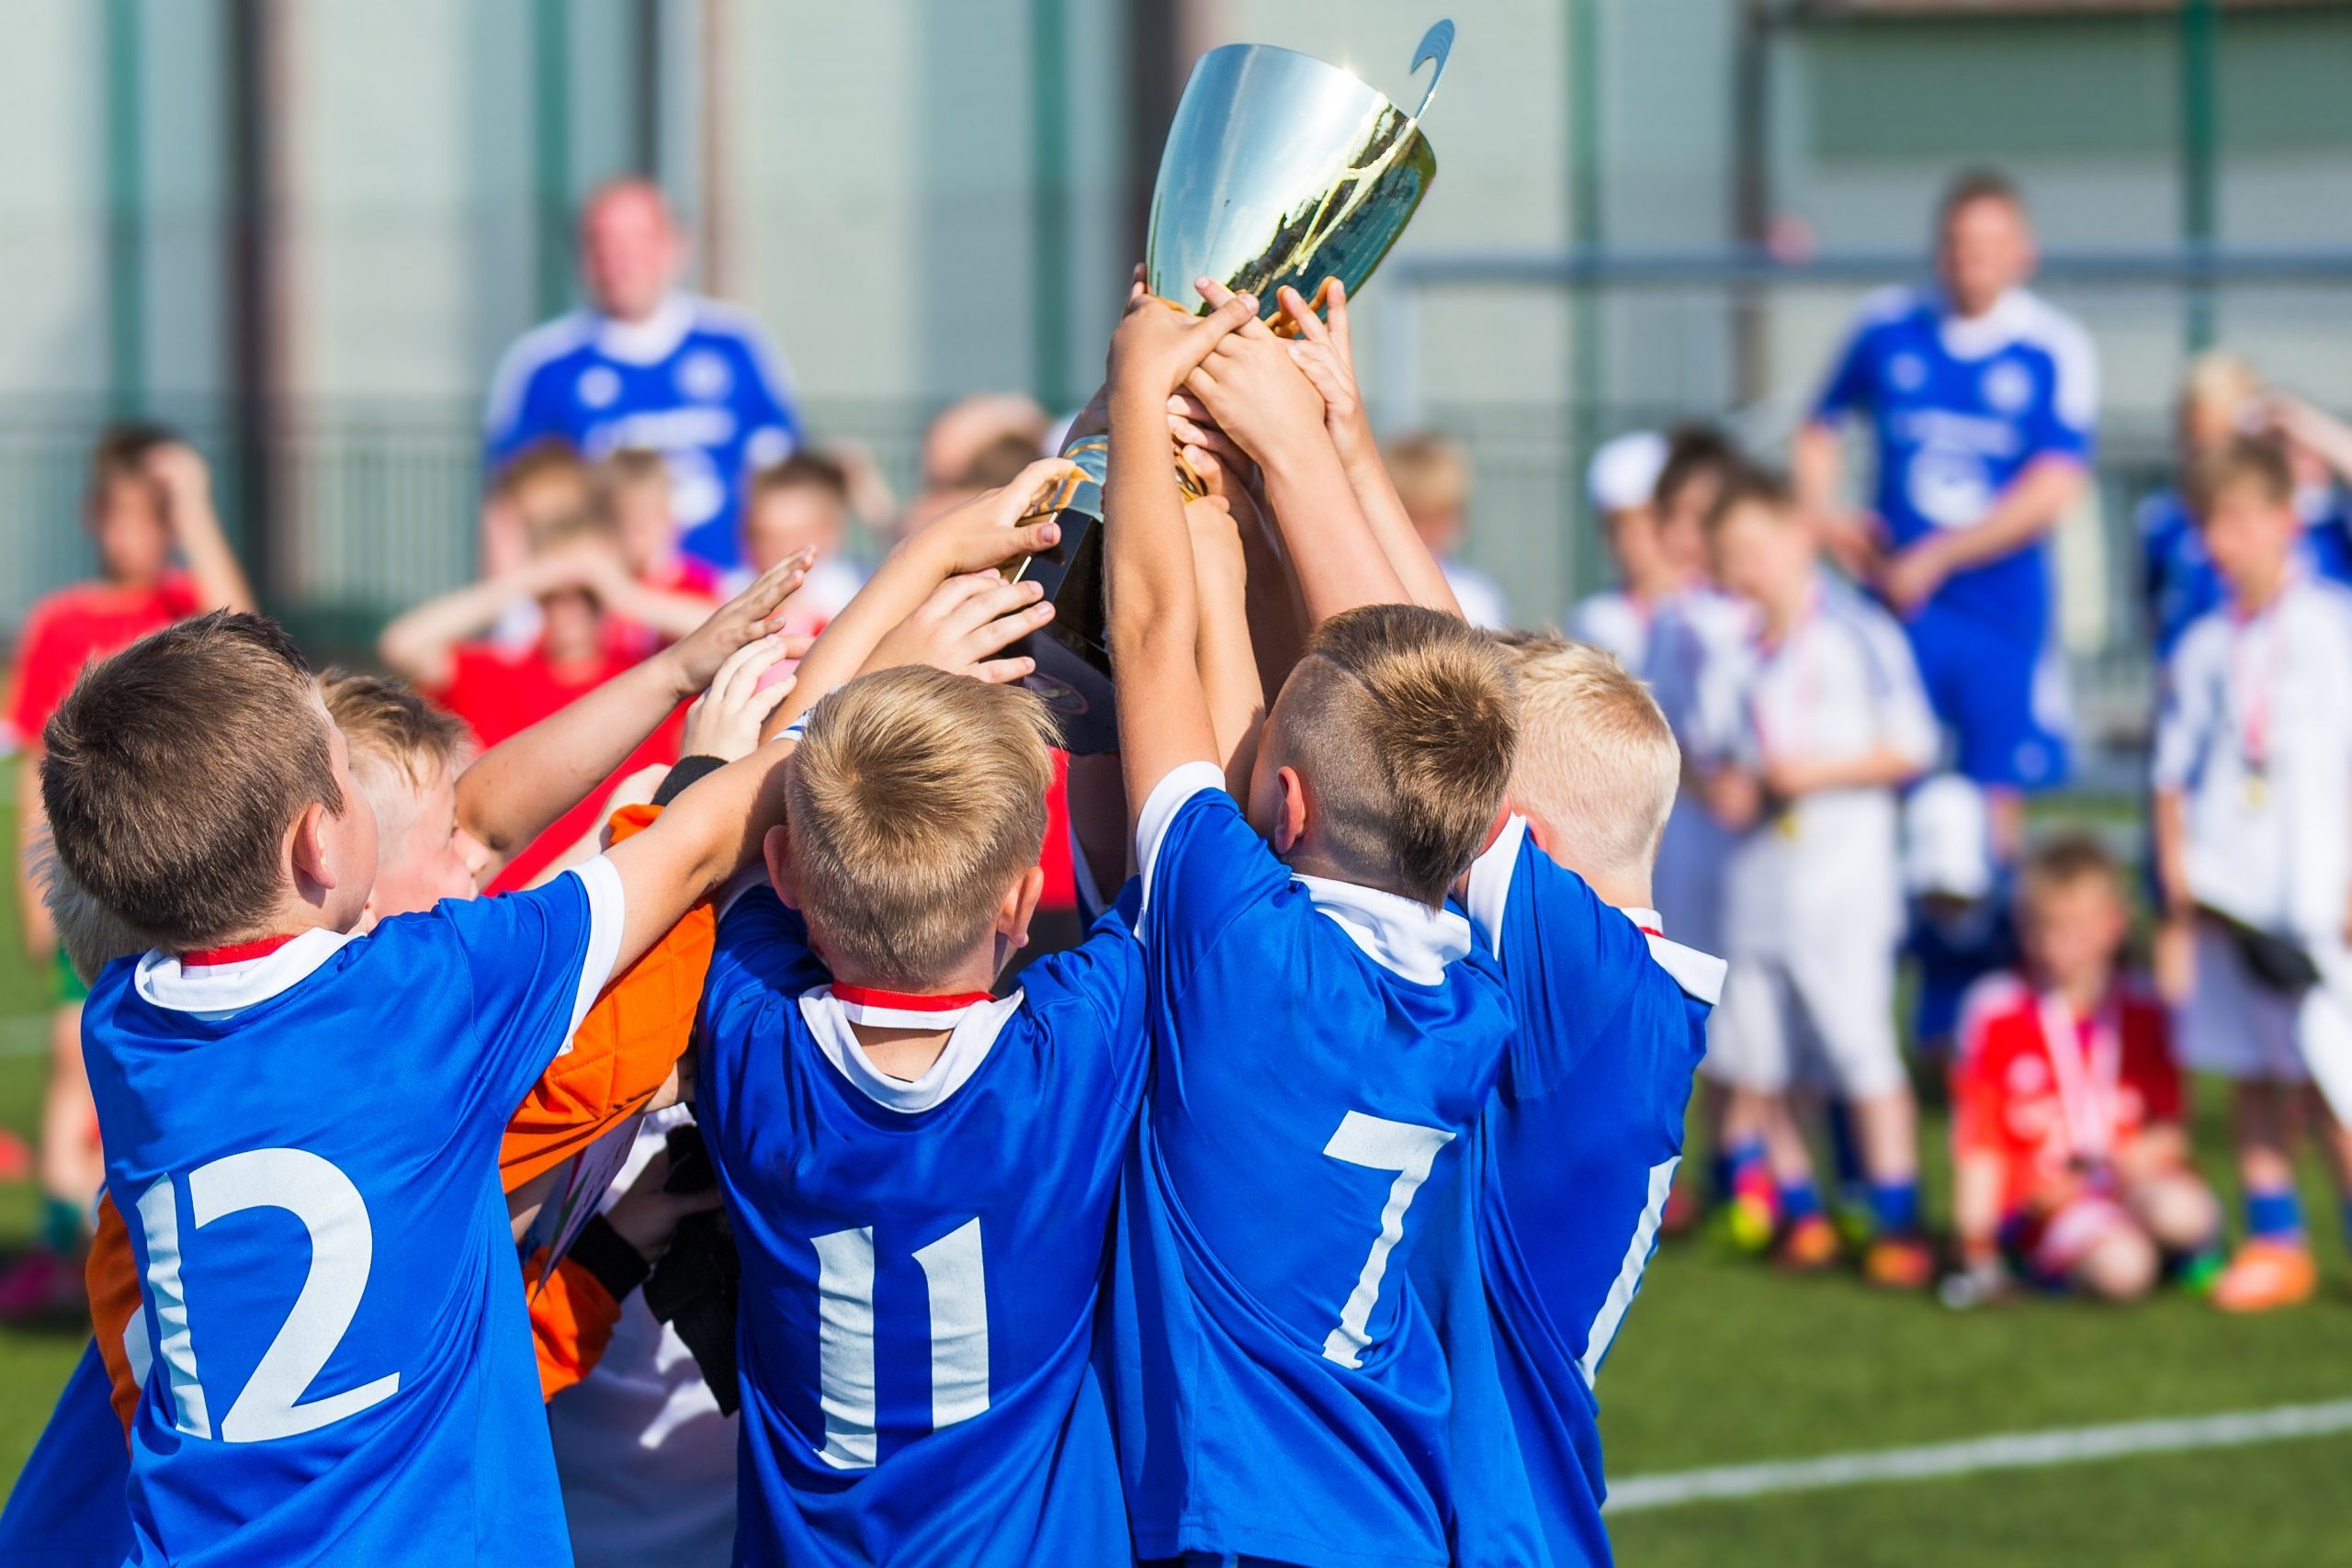 Αθλητισμός Παιδιά: Τα οφέλη του αθλητισμού για τα παιδιά και τους νέους